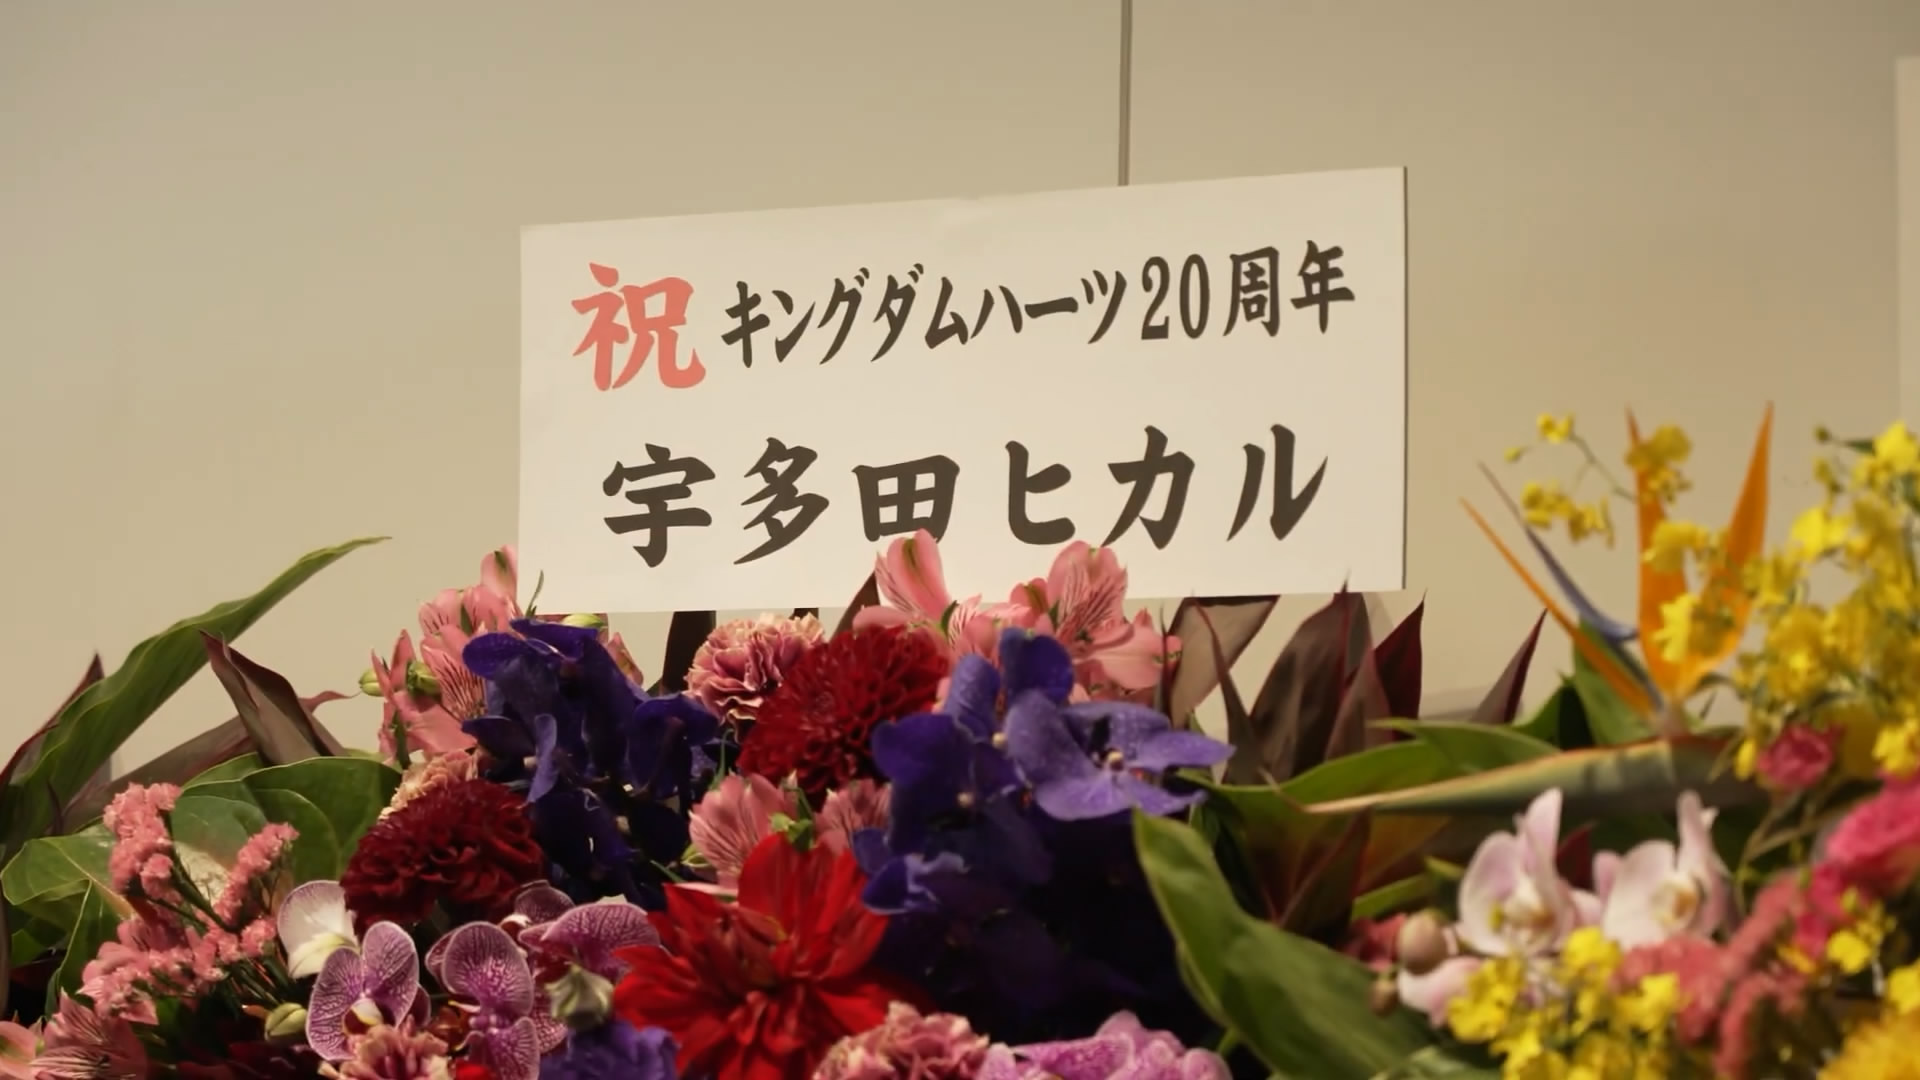 《王國之心》20週年紀念視頻公佈 展示日本的慶祝活動